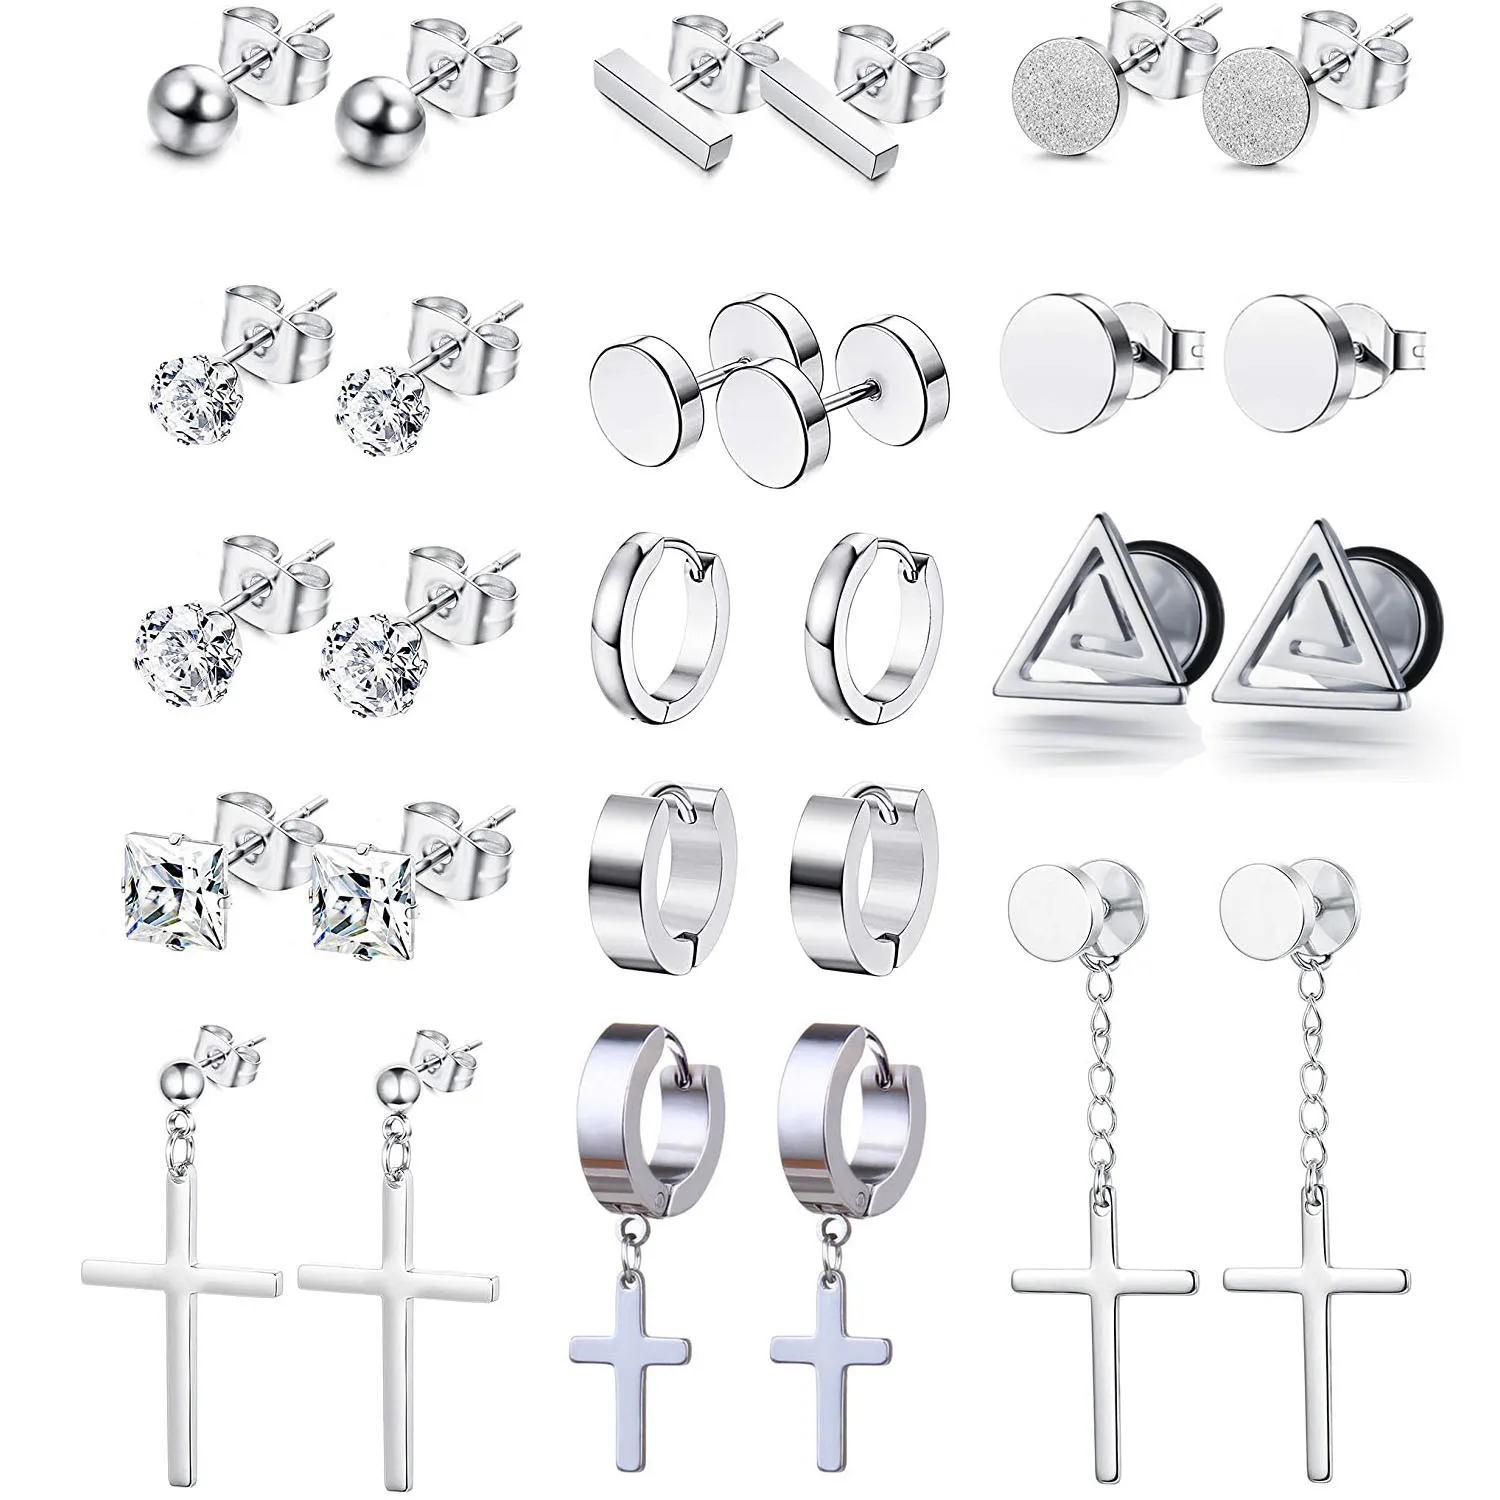 

14 Pairs Stainless Steel Dangle Hinged Cross Stud Earrings for Men Women Hoop Earrings Huggie Silver Black Tone Ear Piercing